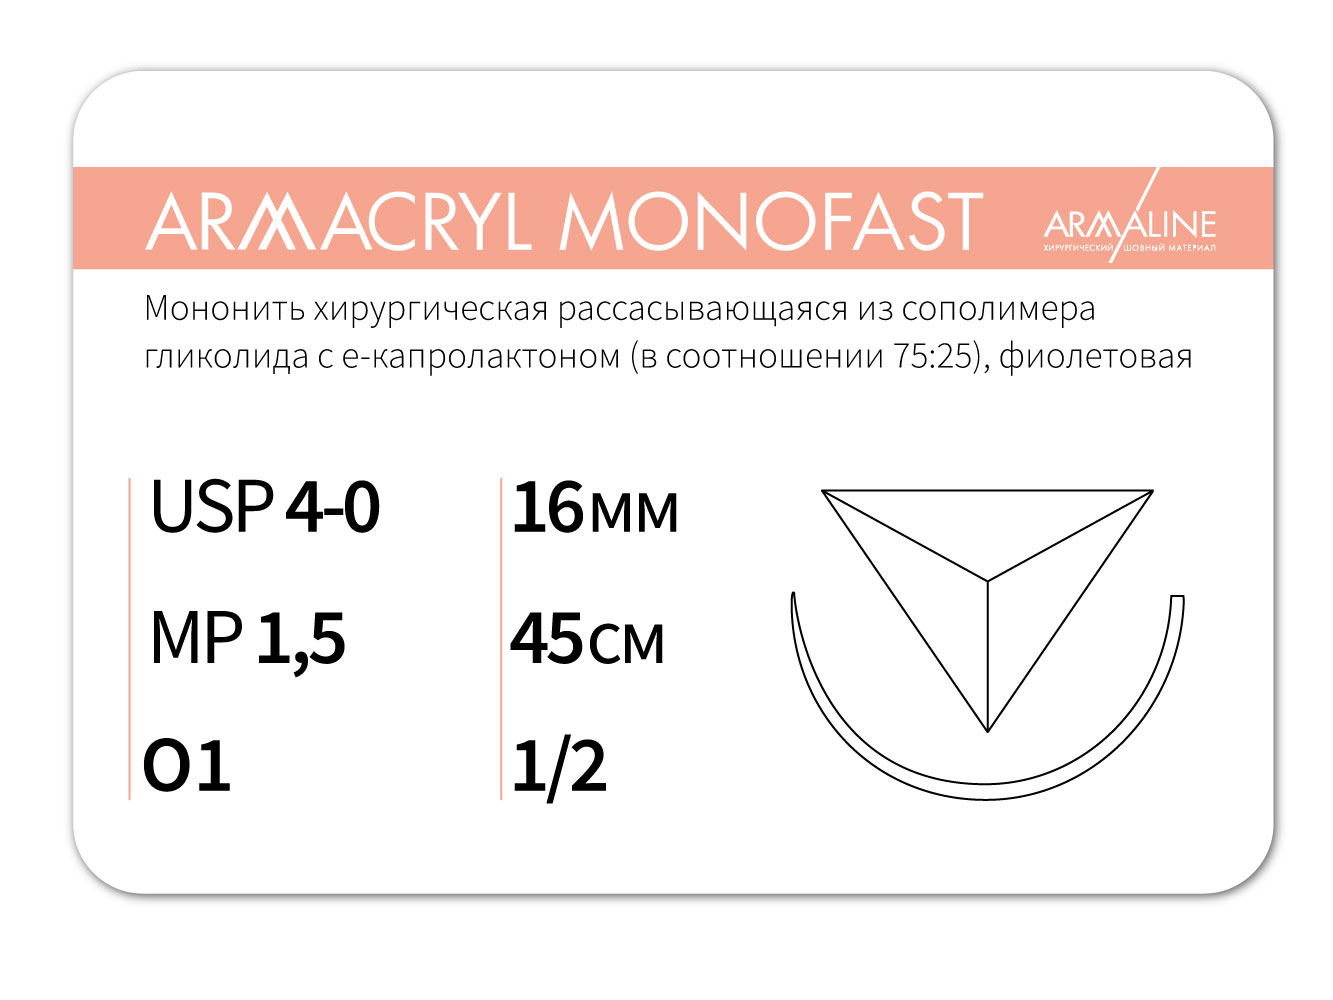 ARMACRYL MONOFAST/Армакрил монофаст (4-0) 45 см - материал хирургический шовный стерильный с атравматической обратно-режущей иглой